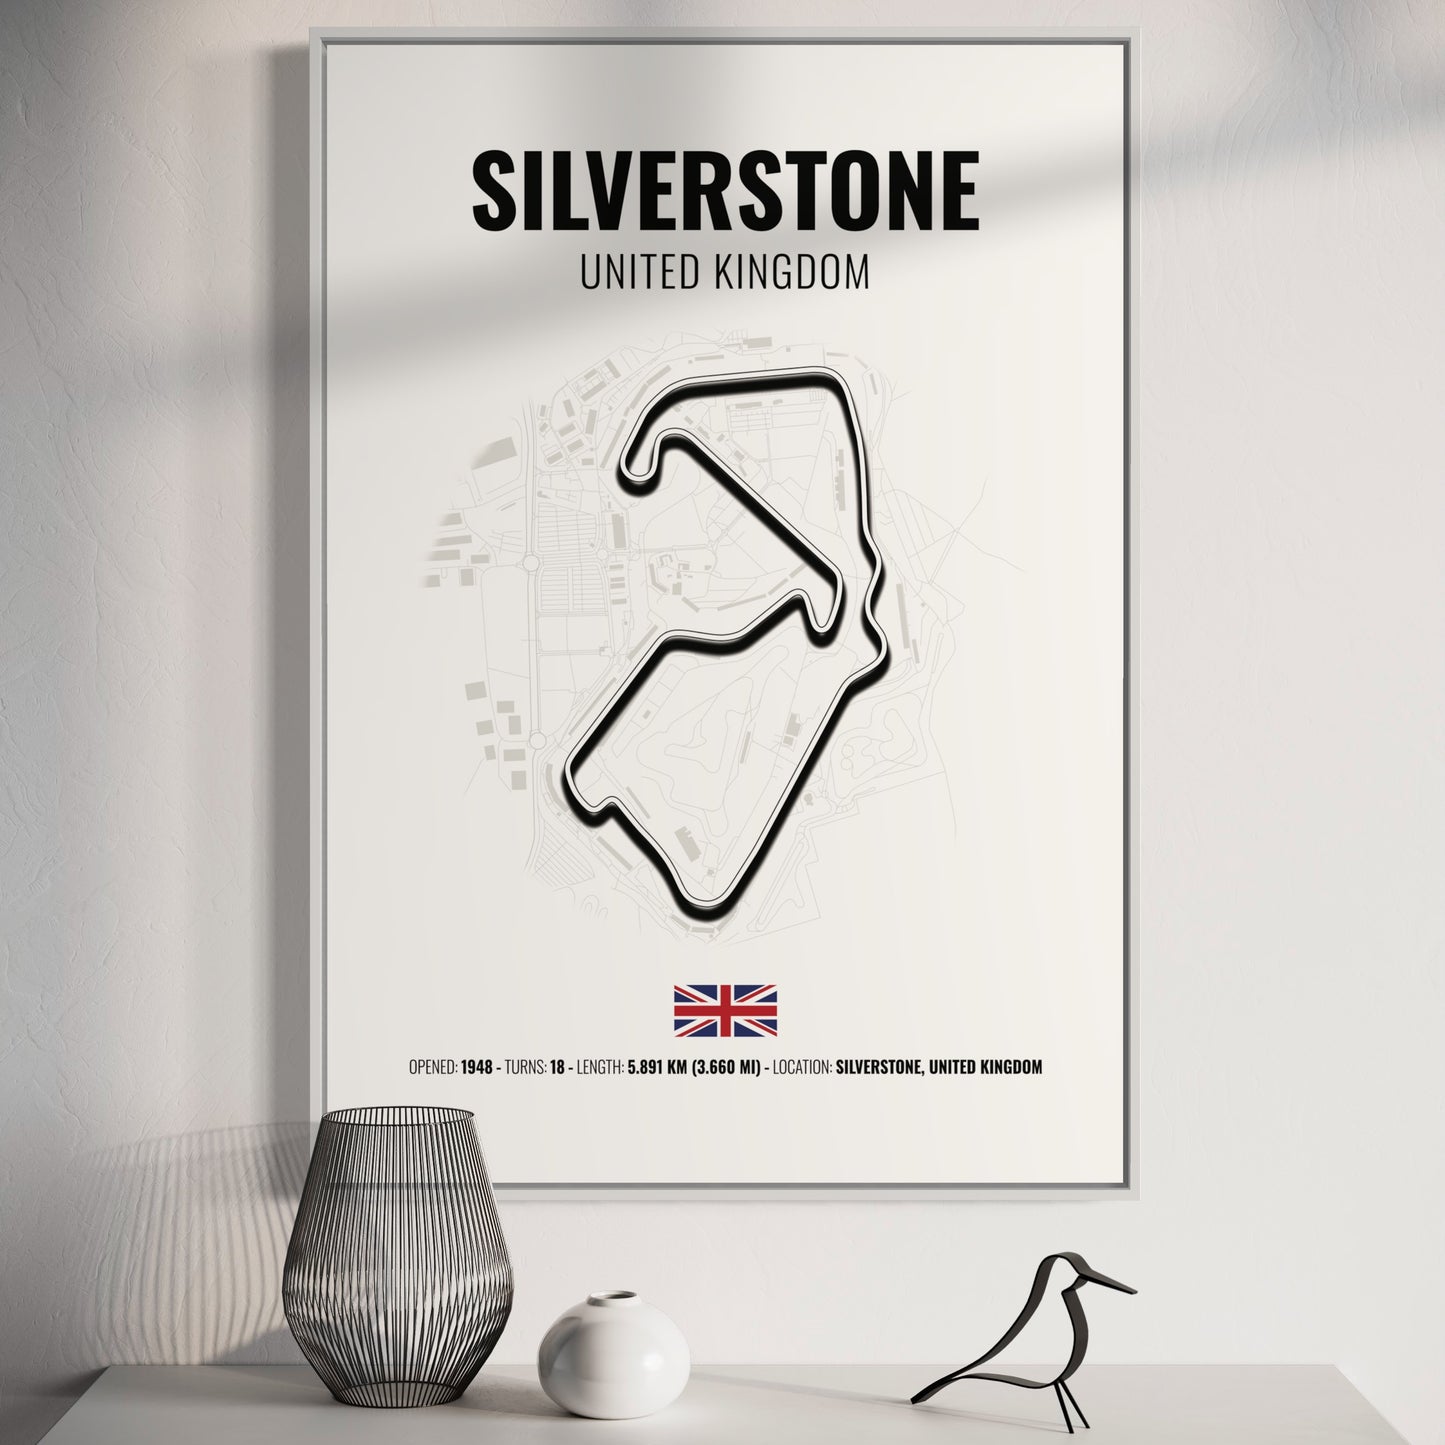 Silverstone F1 Grand Prix Poster | Silverstone F1 Grand Prix Print | Silverstone F1 Grand Prix Wall Art - White